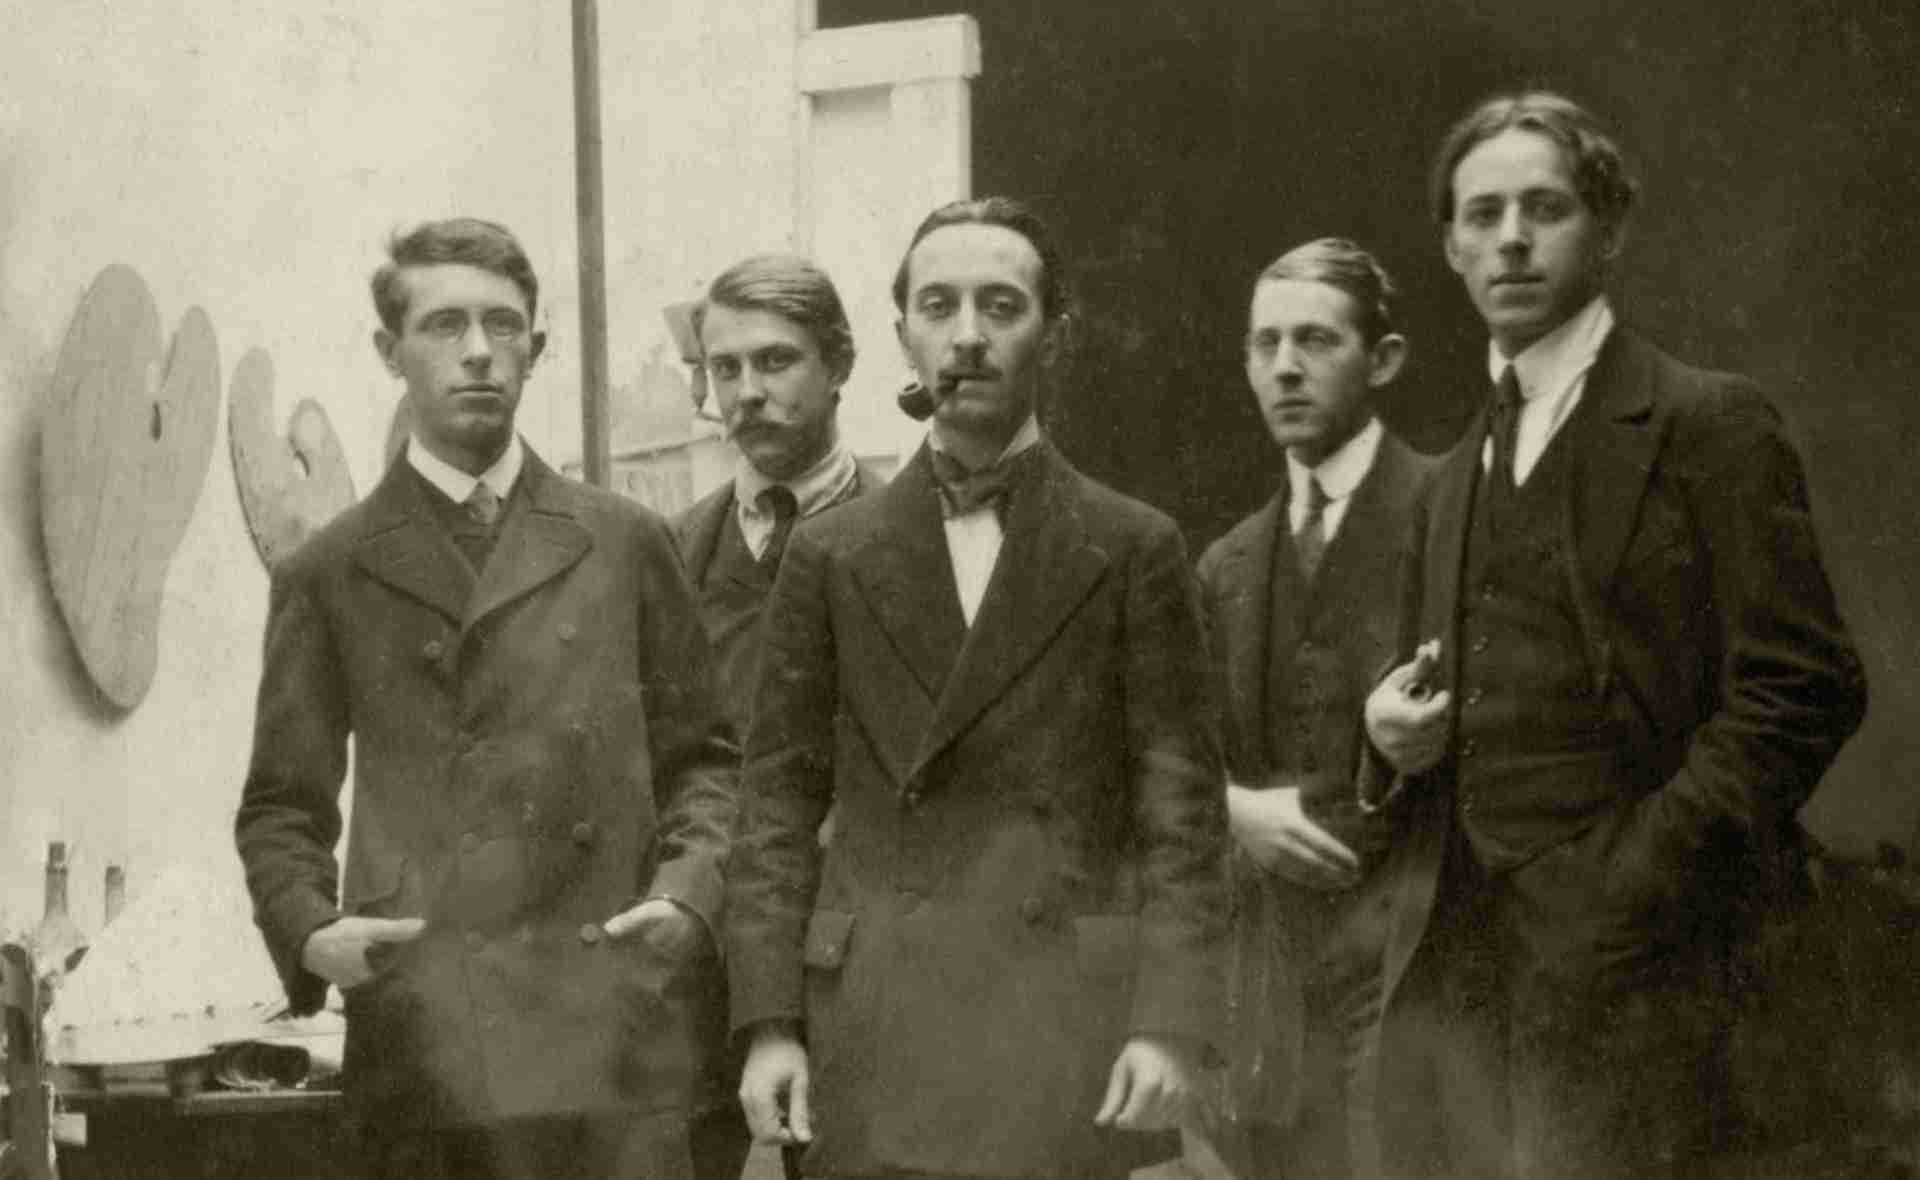 Hungarian students of the Académie La Palette, around 1913. ( from left to right: József Csáky, Elemér Kóródy, Imre Szobotka, István Farkas, Gusztáv Miklós)